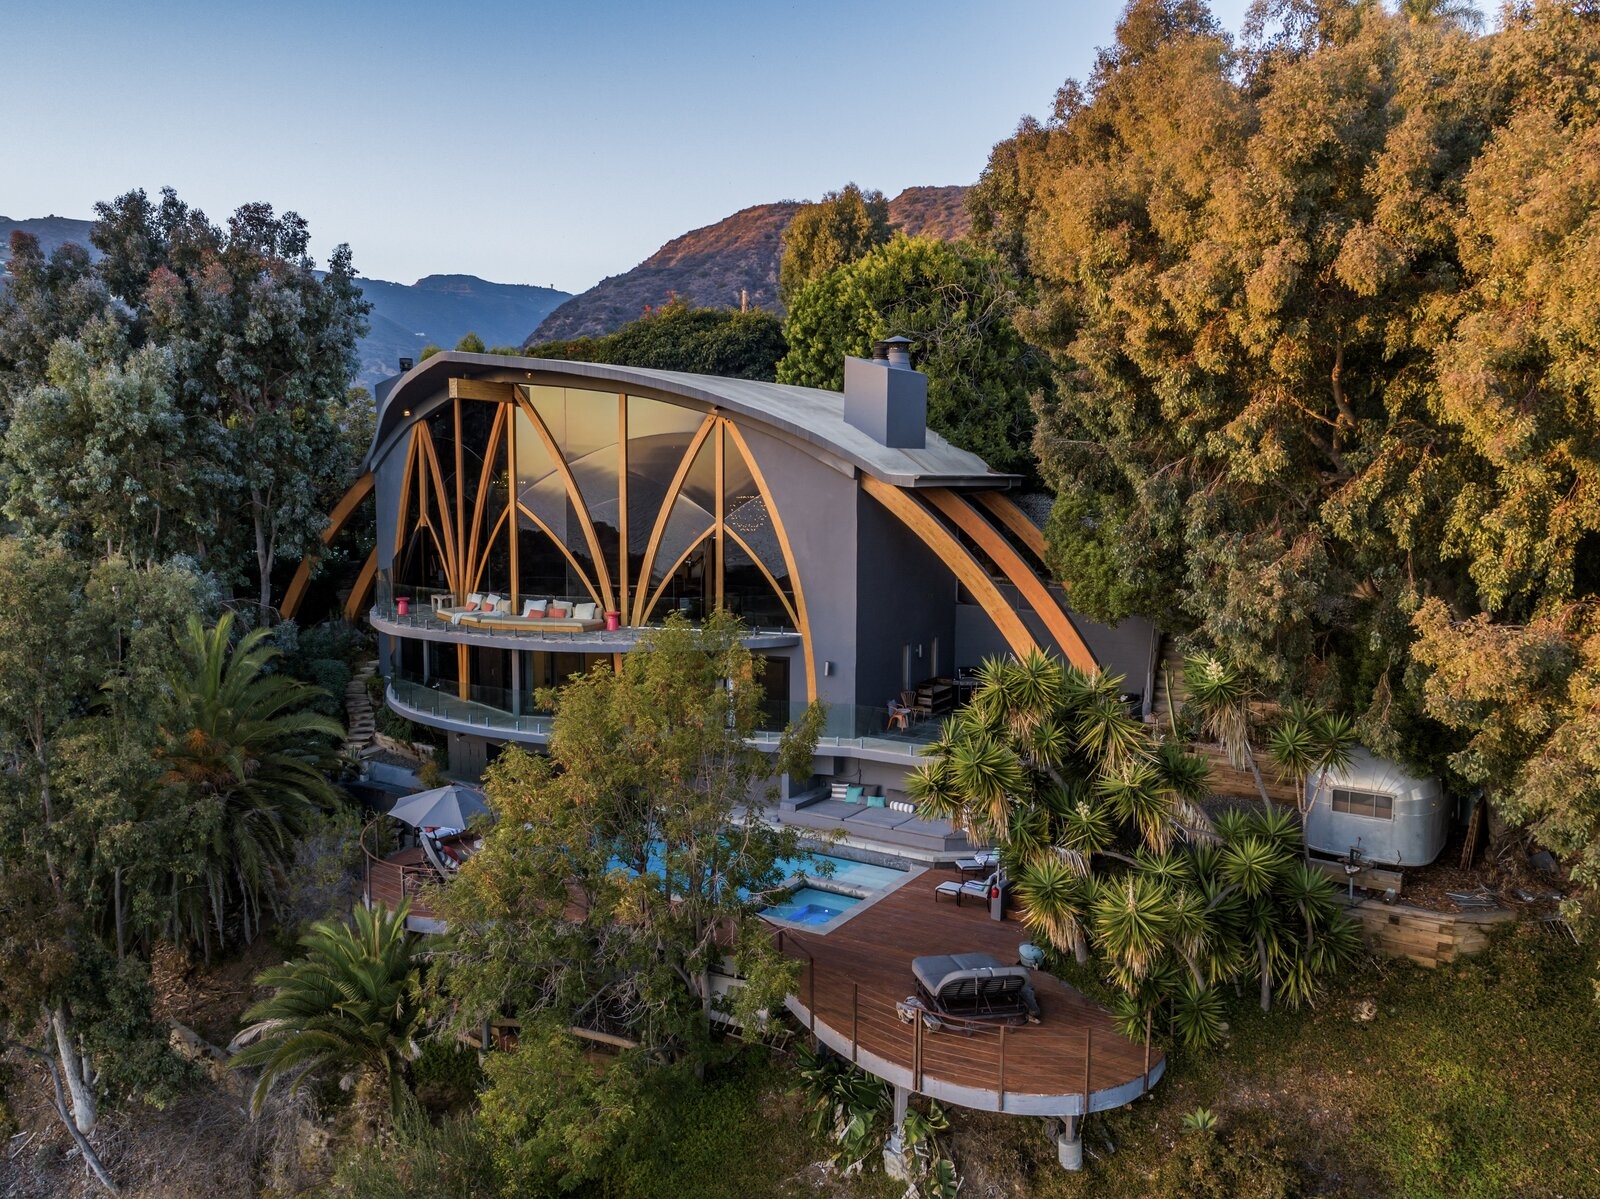 Casa futurista assinada por Harry Gesner está à venda por R$ 52 milhões (Foto: Divulgação)